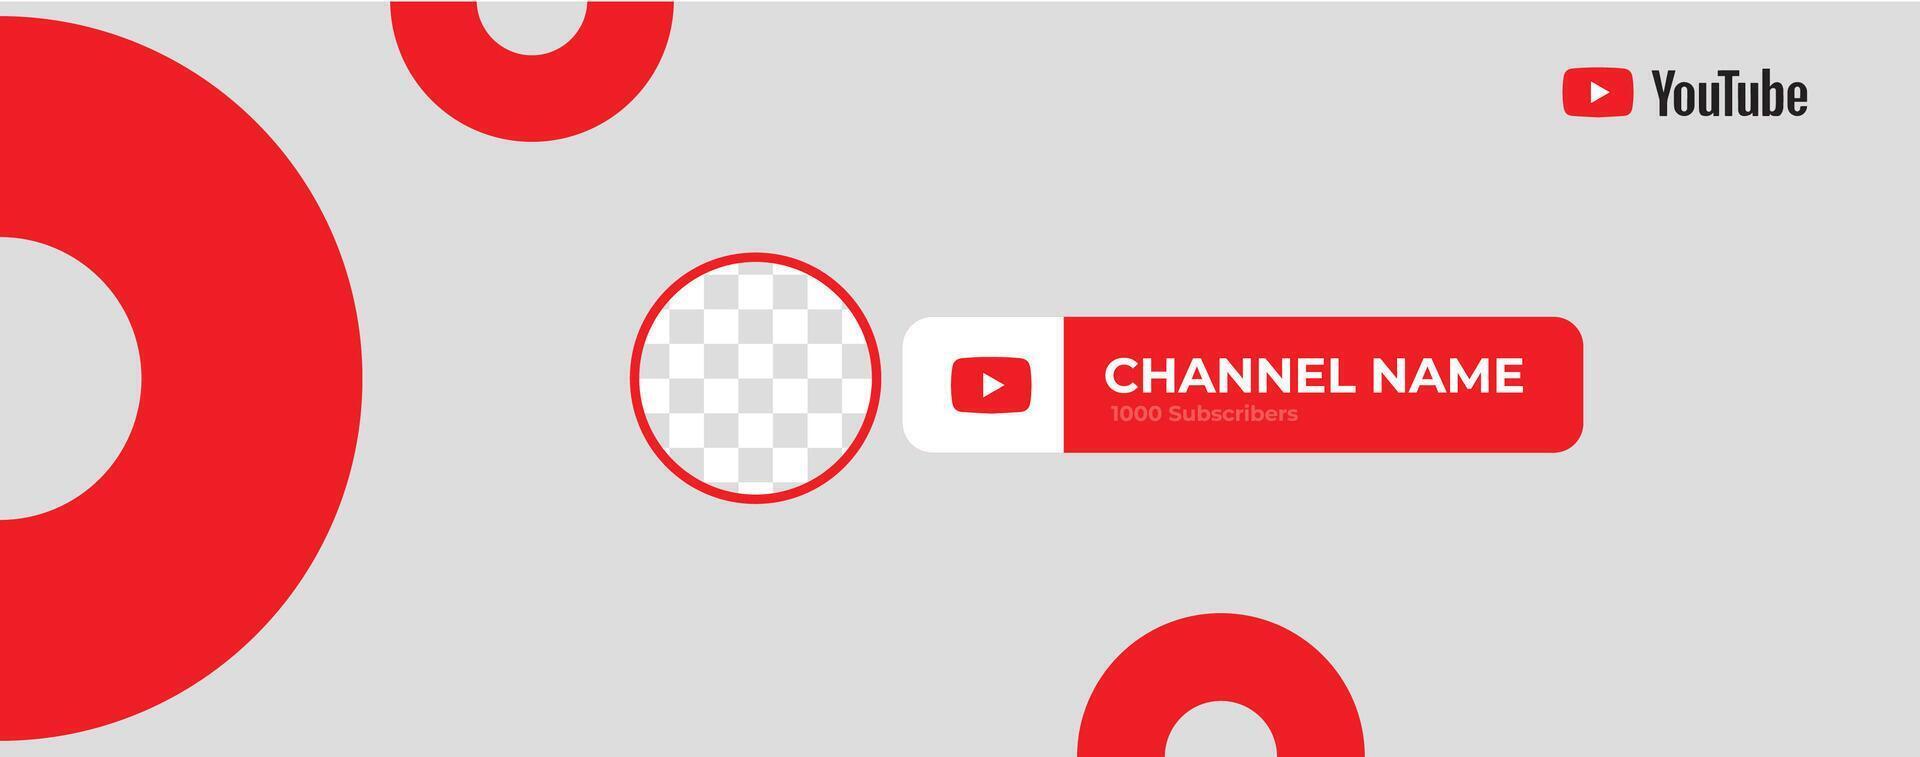 youtube kanaal Hoes draadframe. youtube banier voor ontwerp uw kanaal. youtube kanaal naam lager derde vector